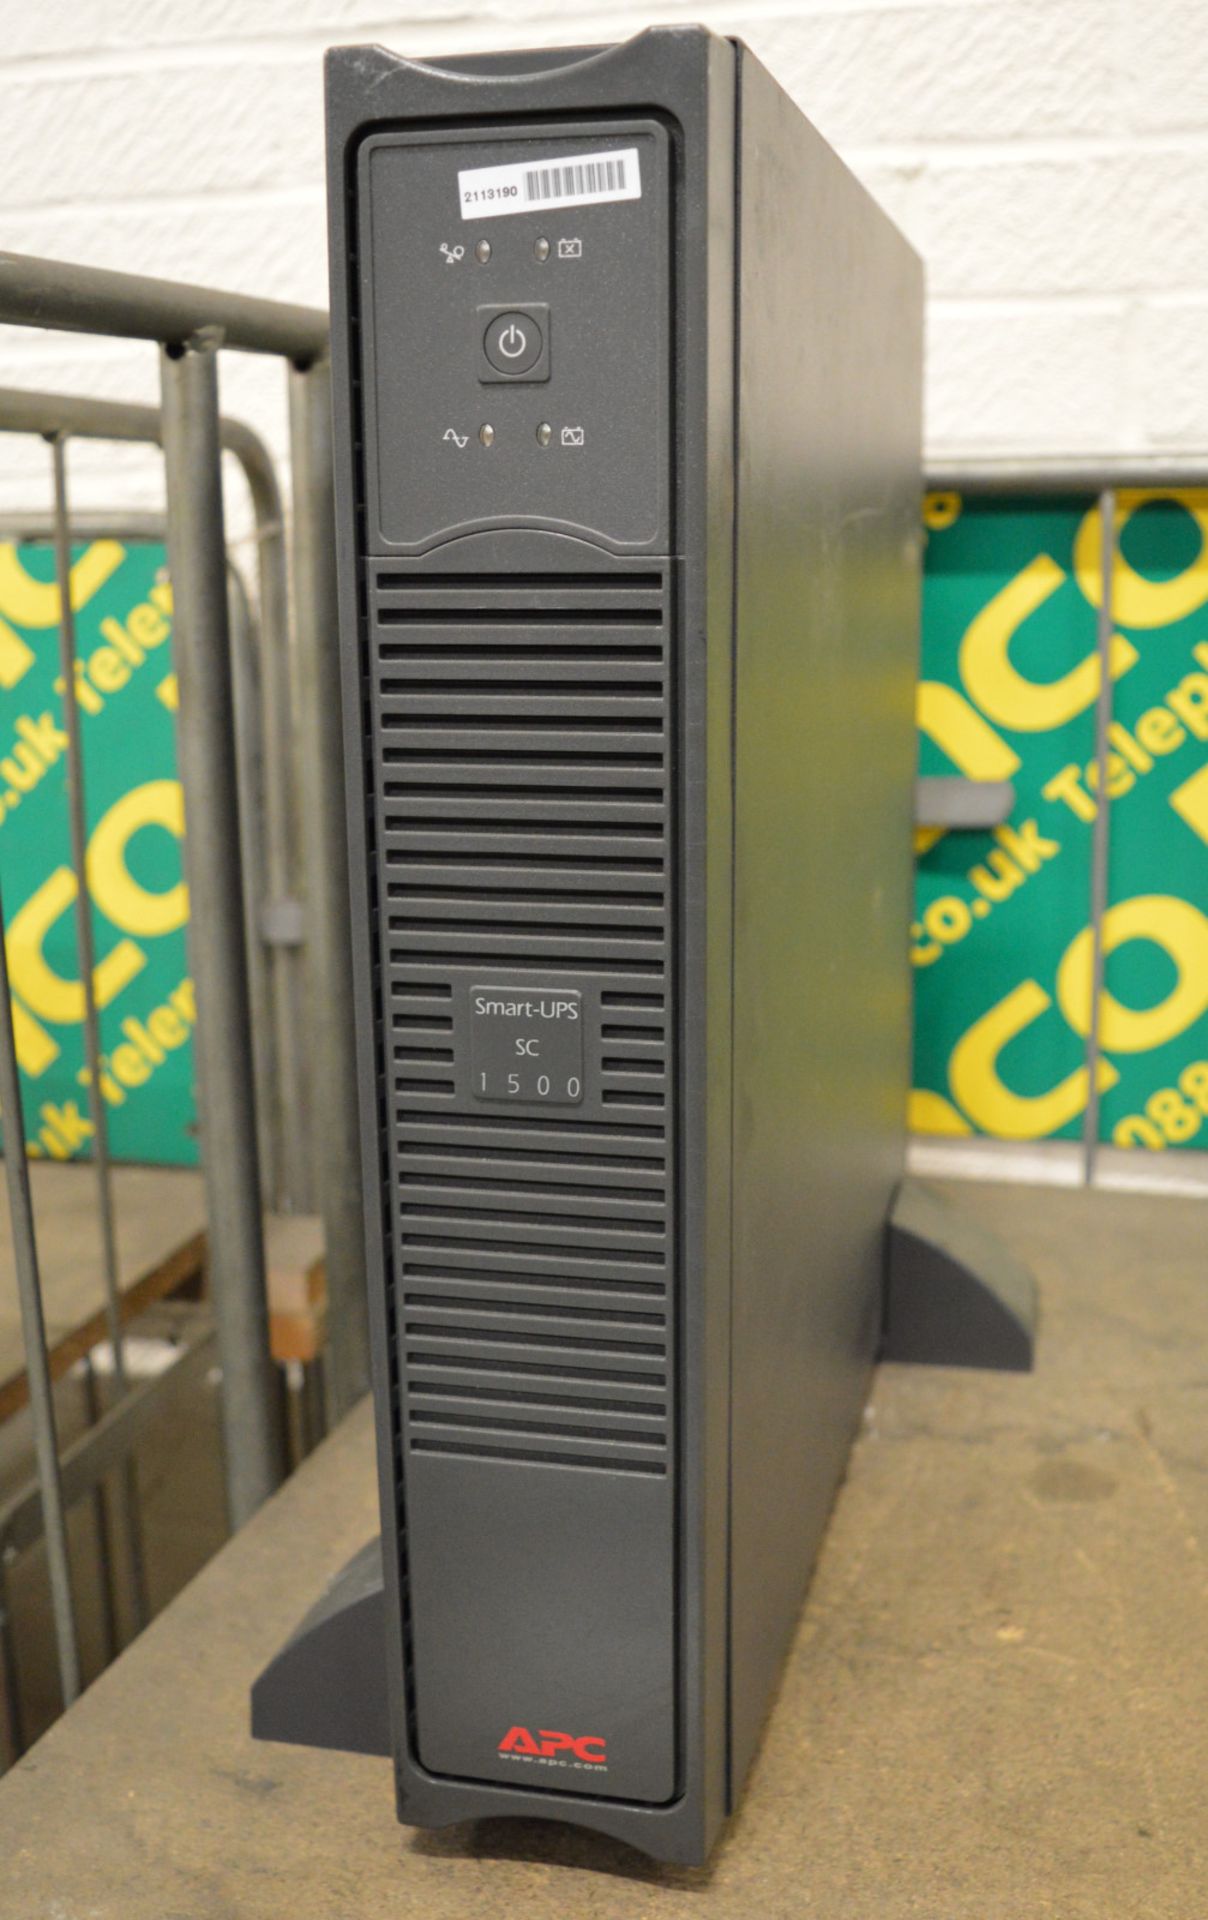 APC Smart UPS SC 1500.